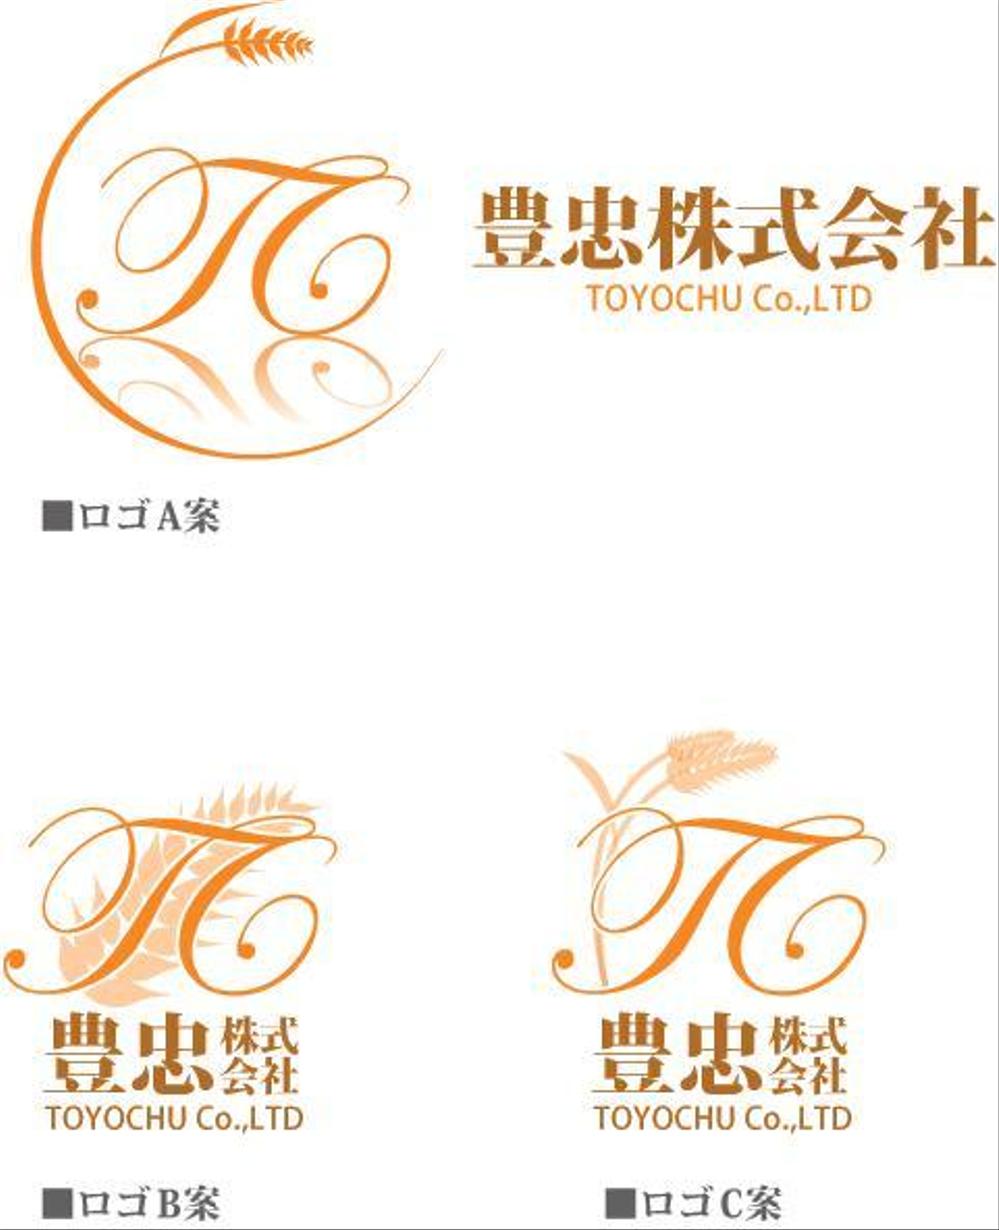 toyochu_logo_frog.jpg